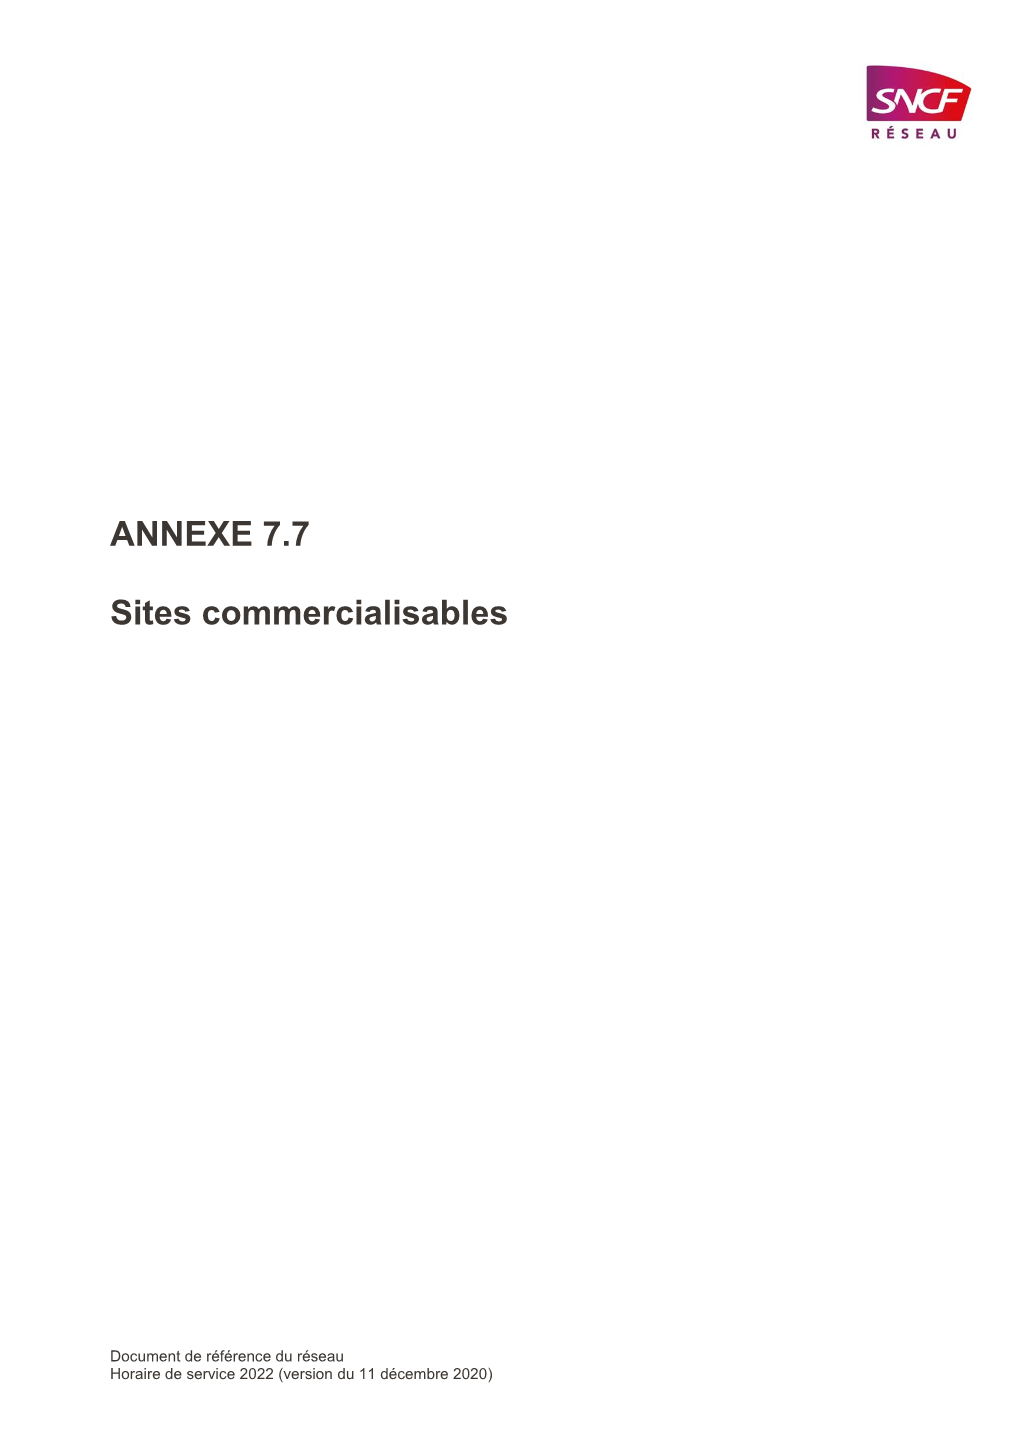 ANNEXE 7.7 Sites Commercialisables